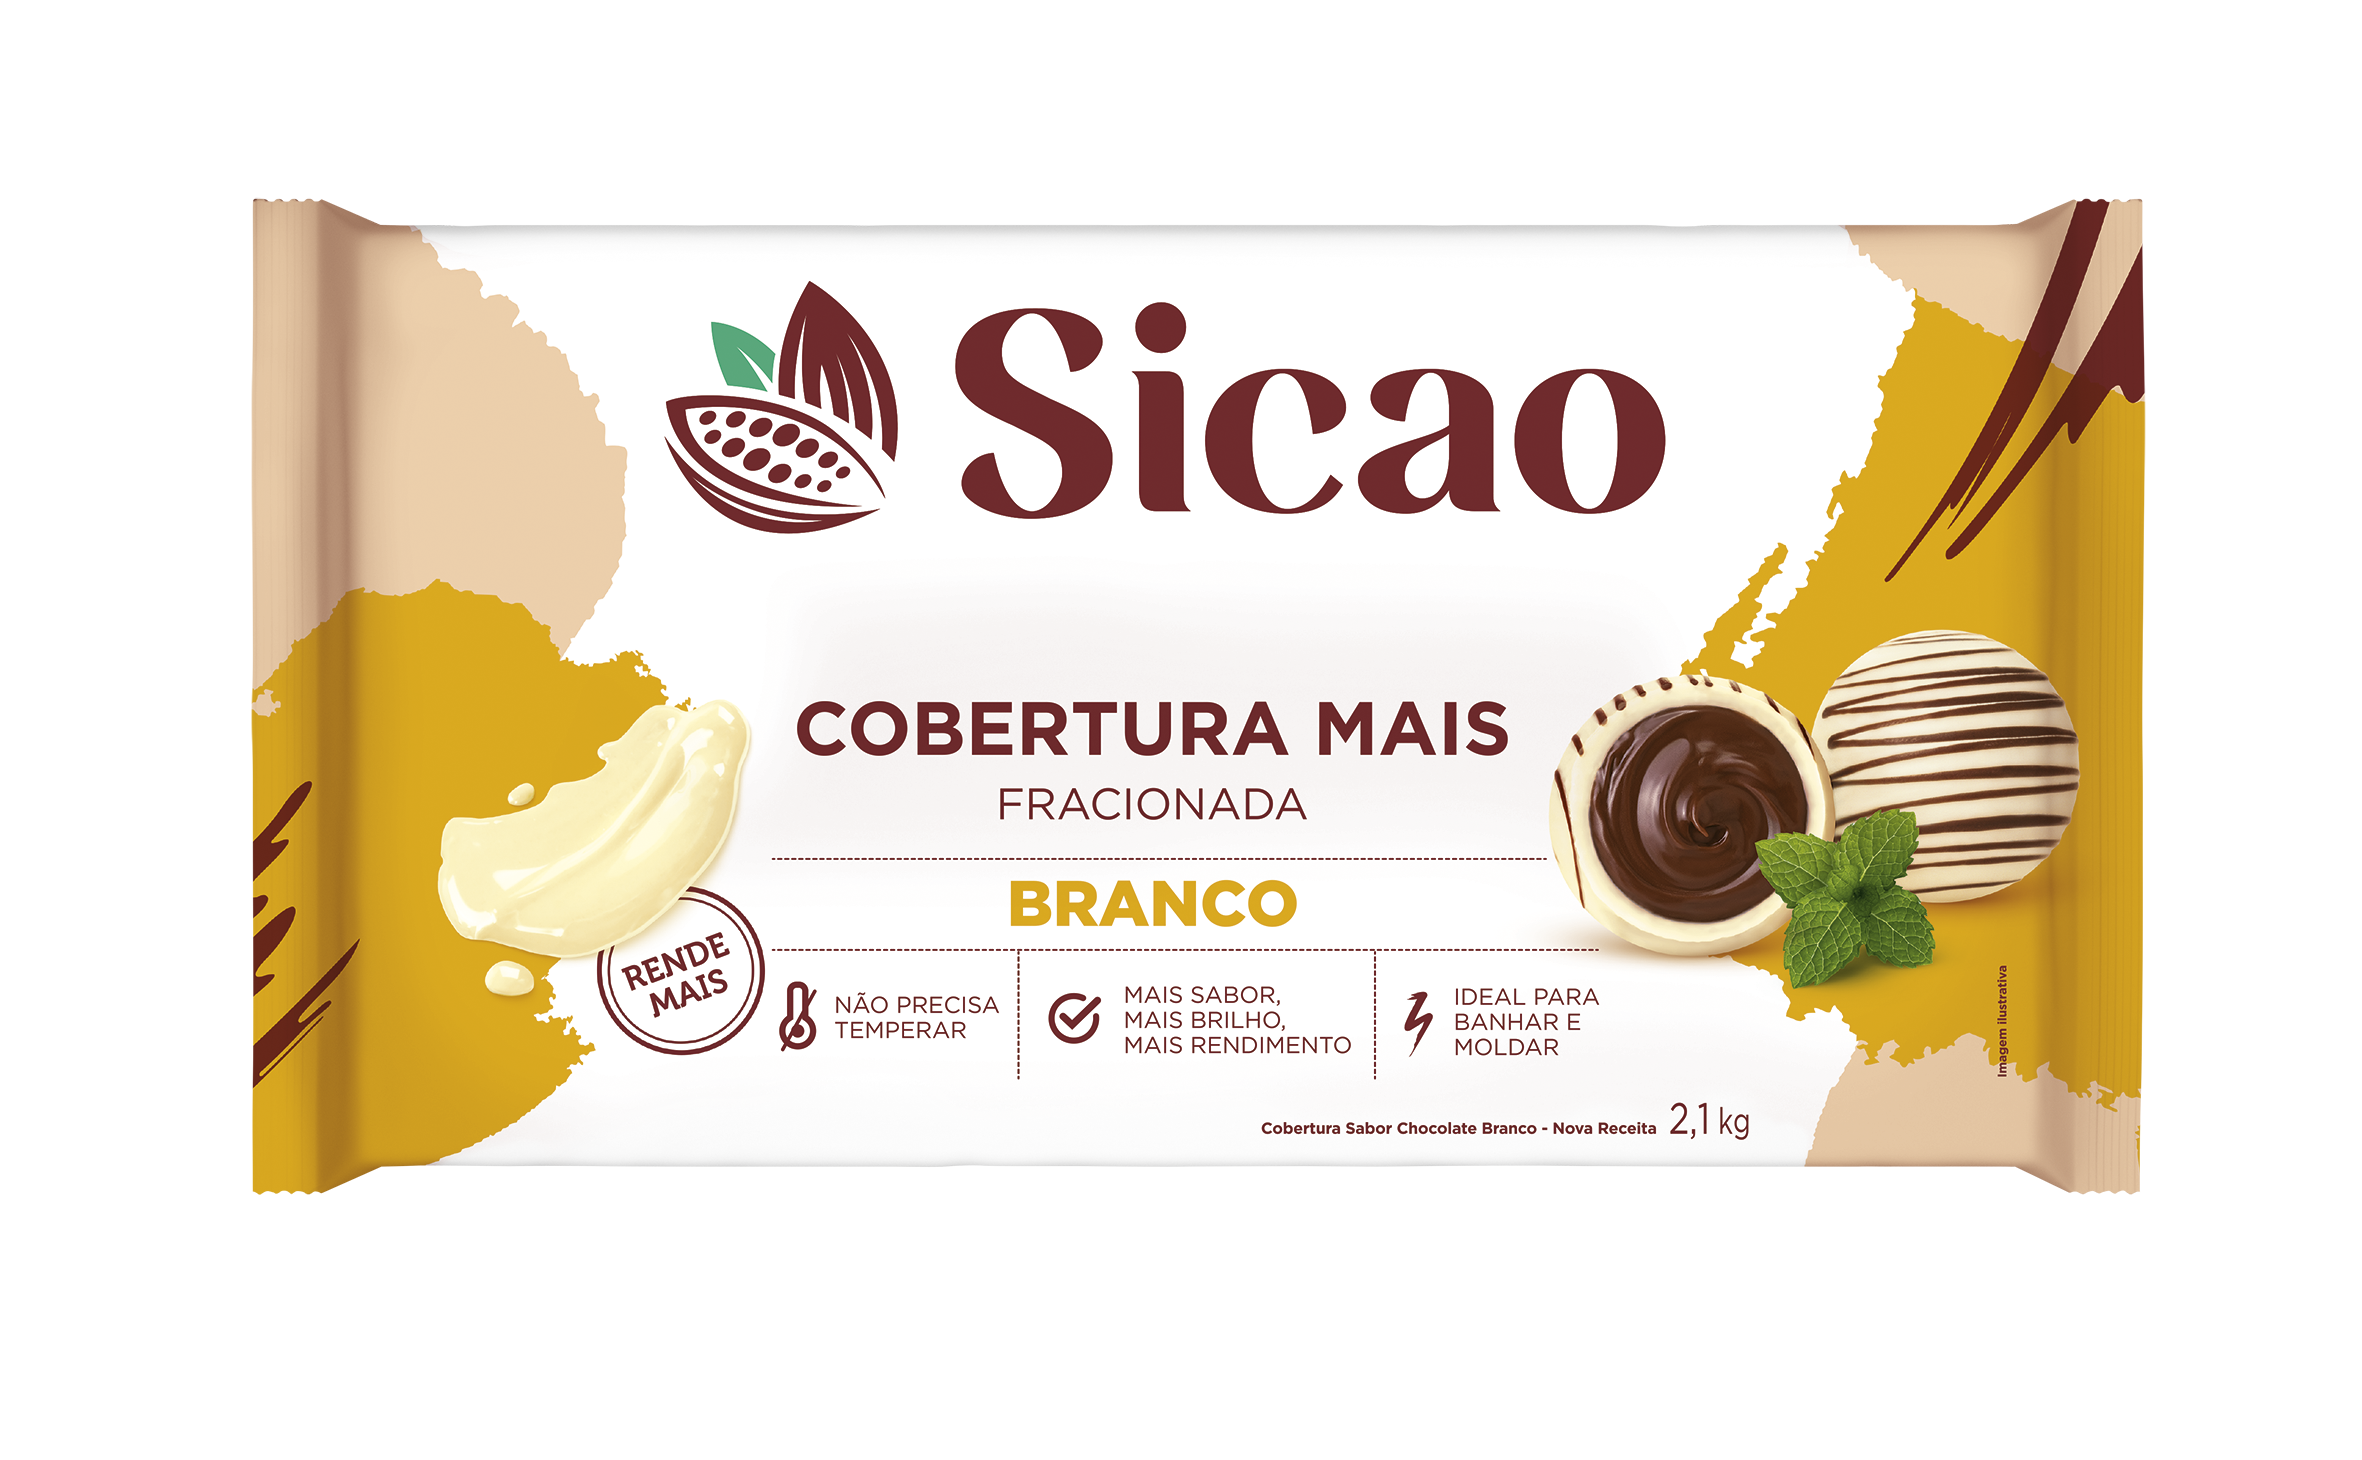 Cobertura Fracionada Sabor Chocolate Branco Sicao Mais - Barra 2,1 kg (1)